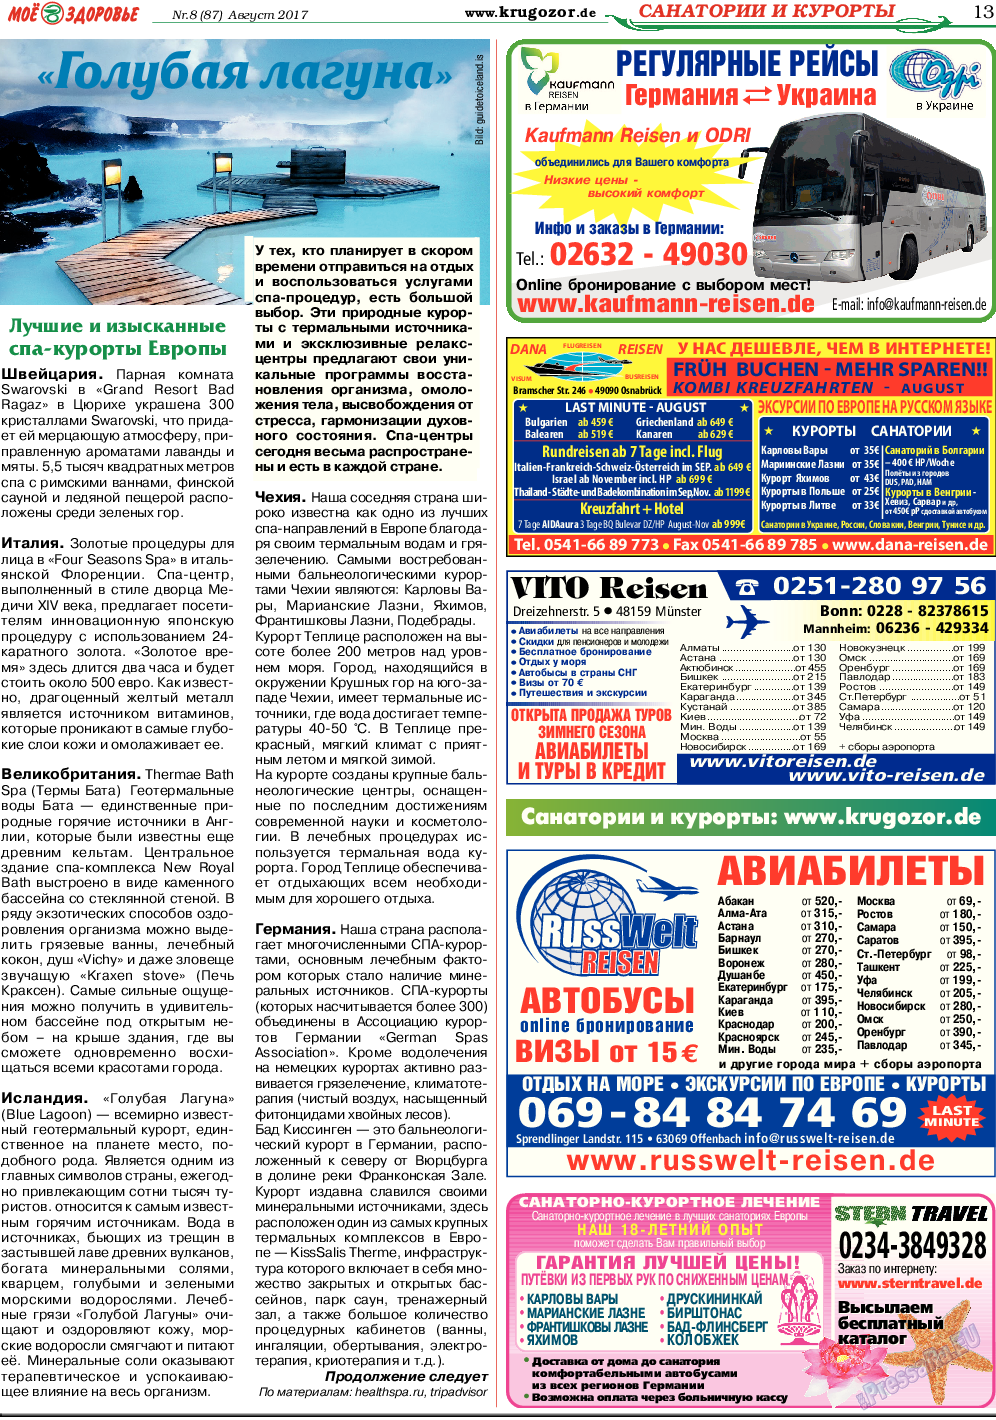 Кругозор, газета. 2017 №8 стр.13